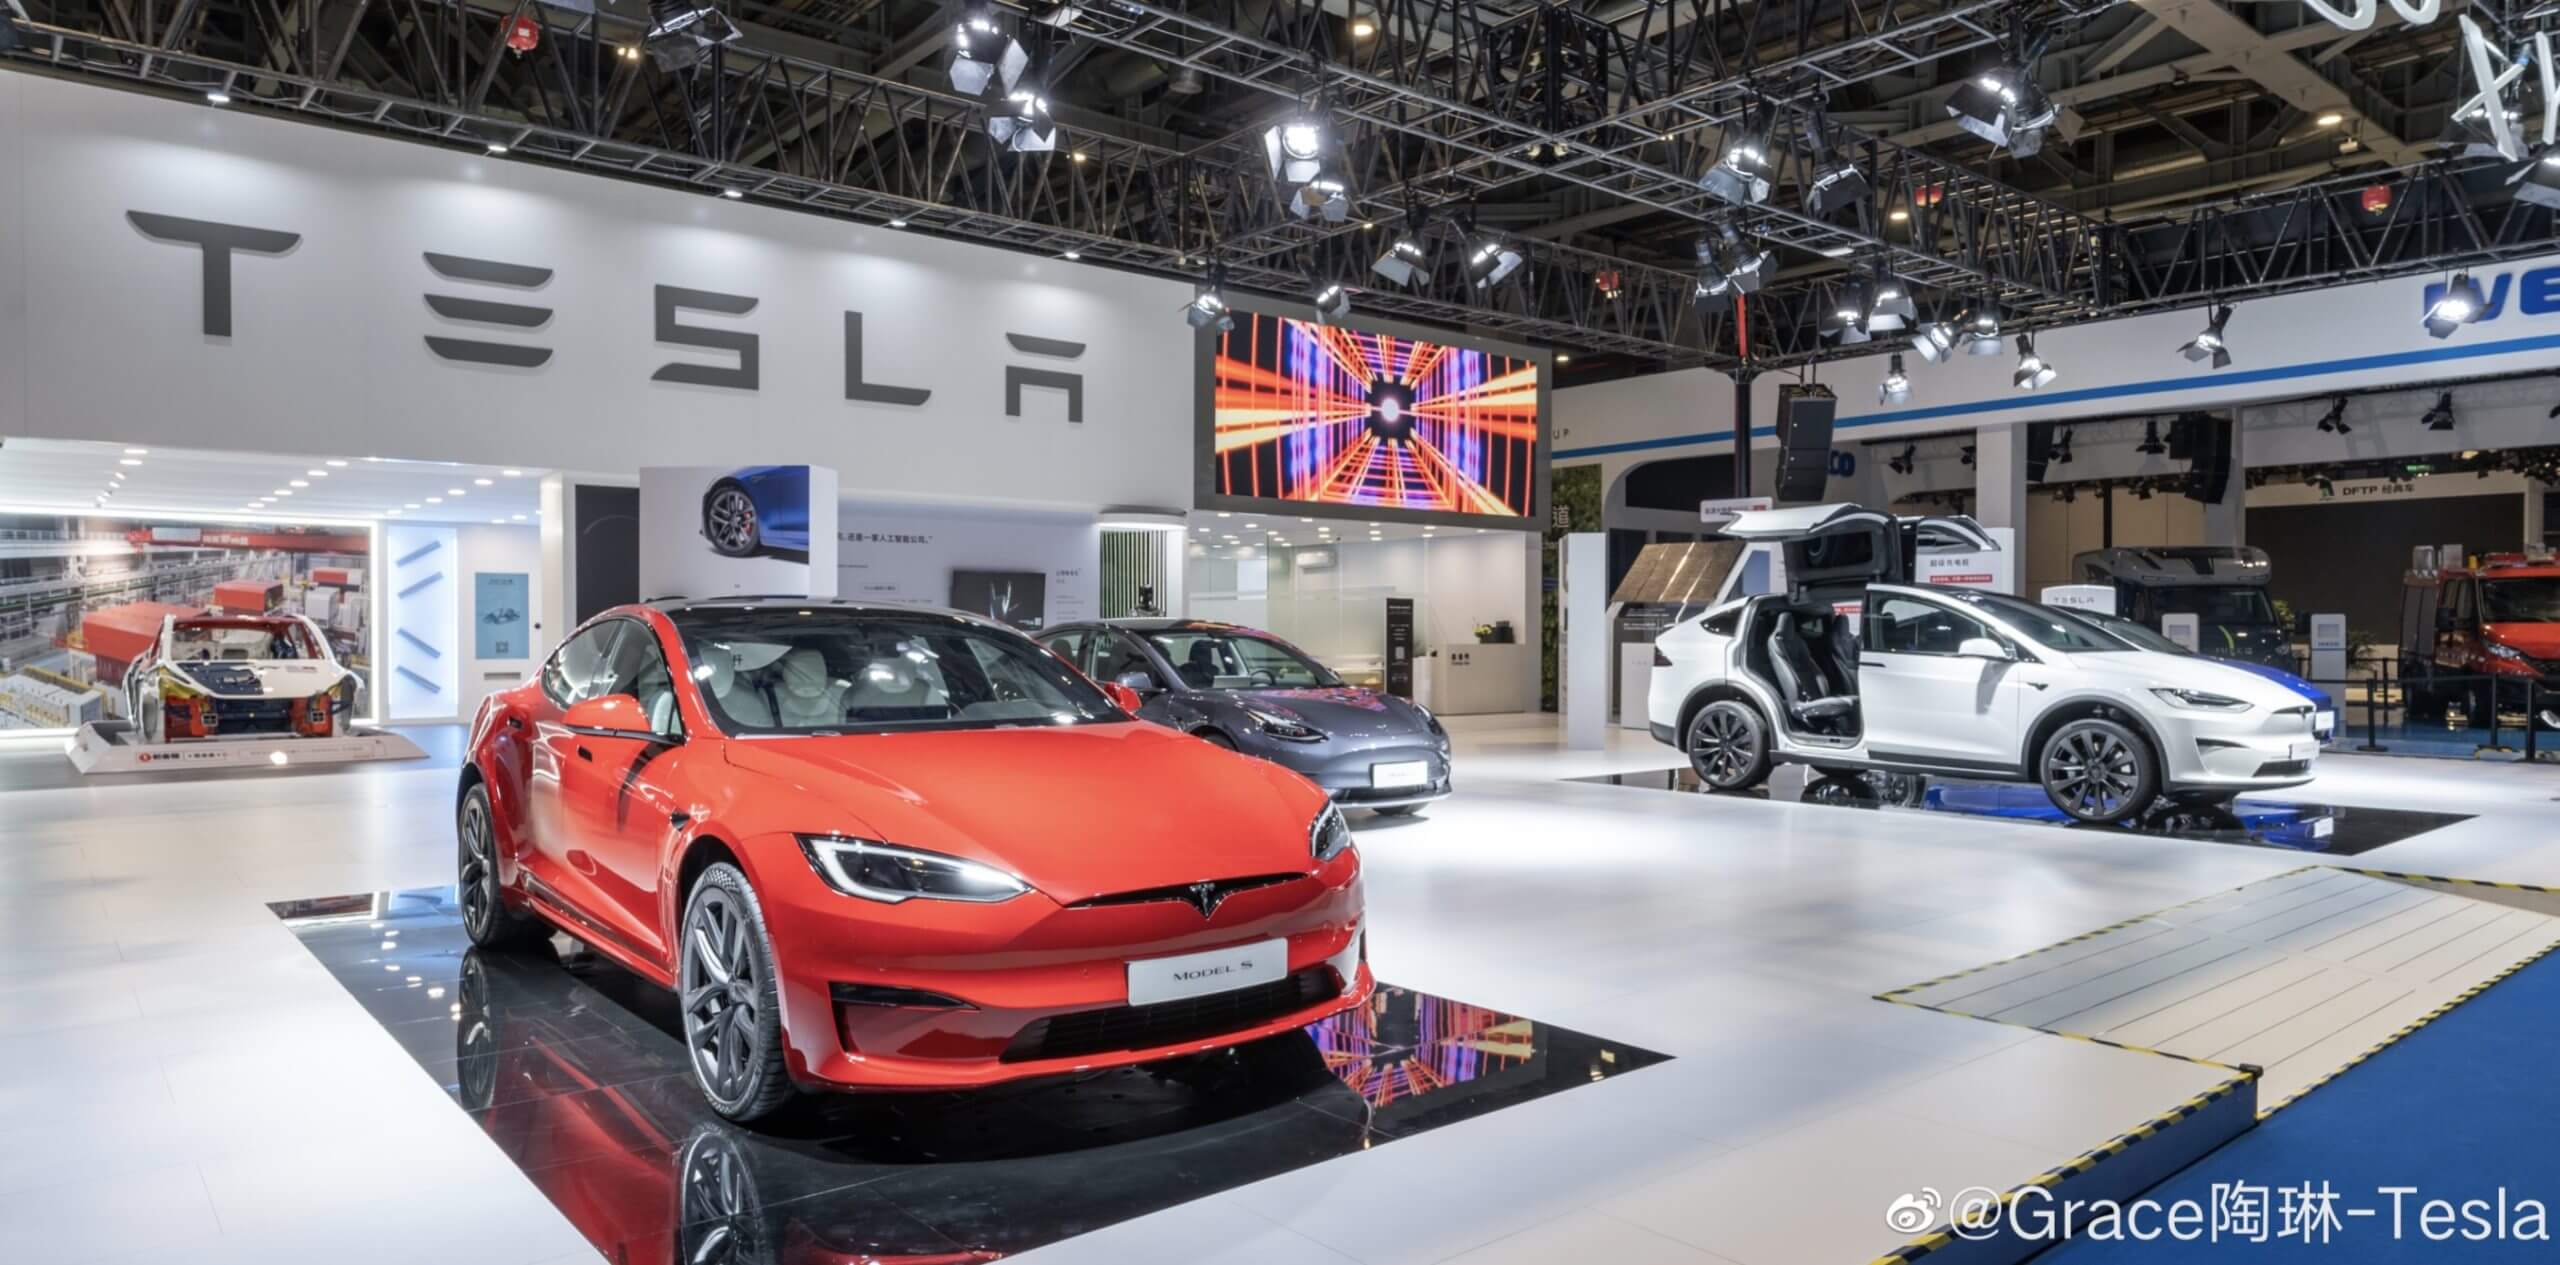 حصلت Tesla Model S & Model X على الفائزين بجائزة “أفضل قيمة لإعادة البيع”